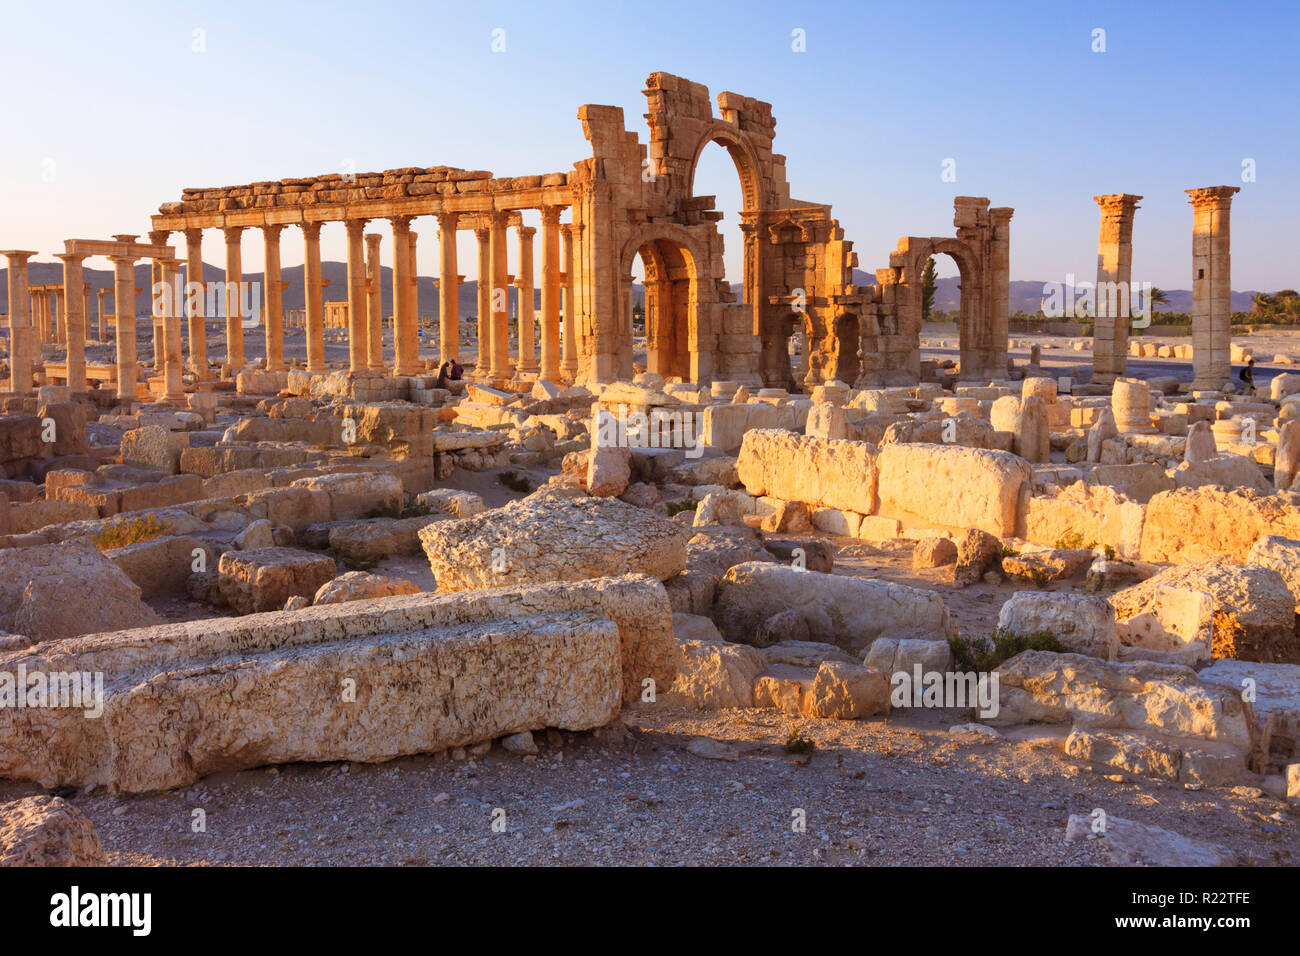 Palmyra, Homs Governatorato, Siria - Maggio 27th, 2009 : GRANDE colonnato e monumentale arco di Palmyra. Il monumentale Arco è stato un terzo secolo ornam Romano Foto Stock